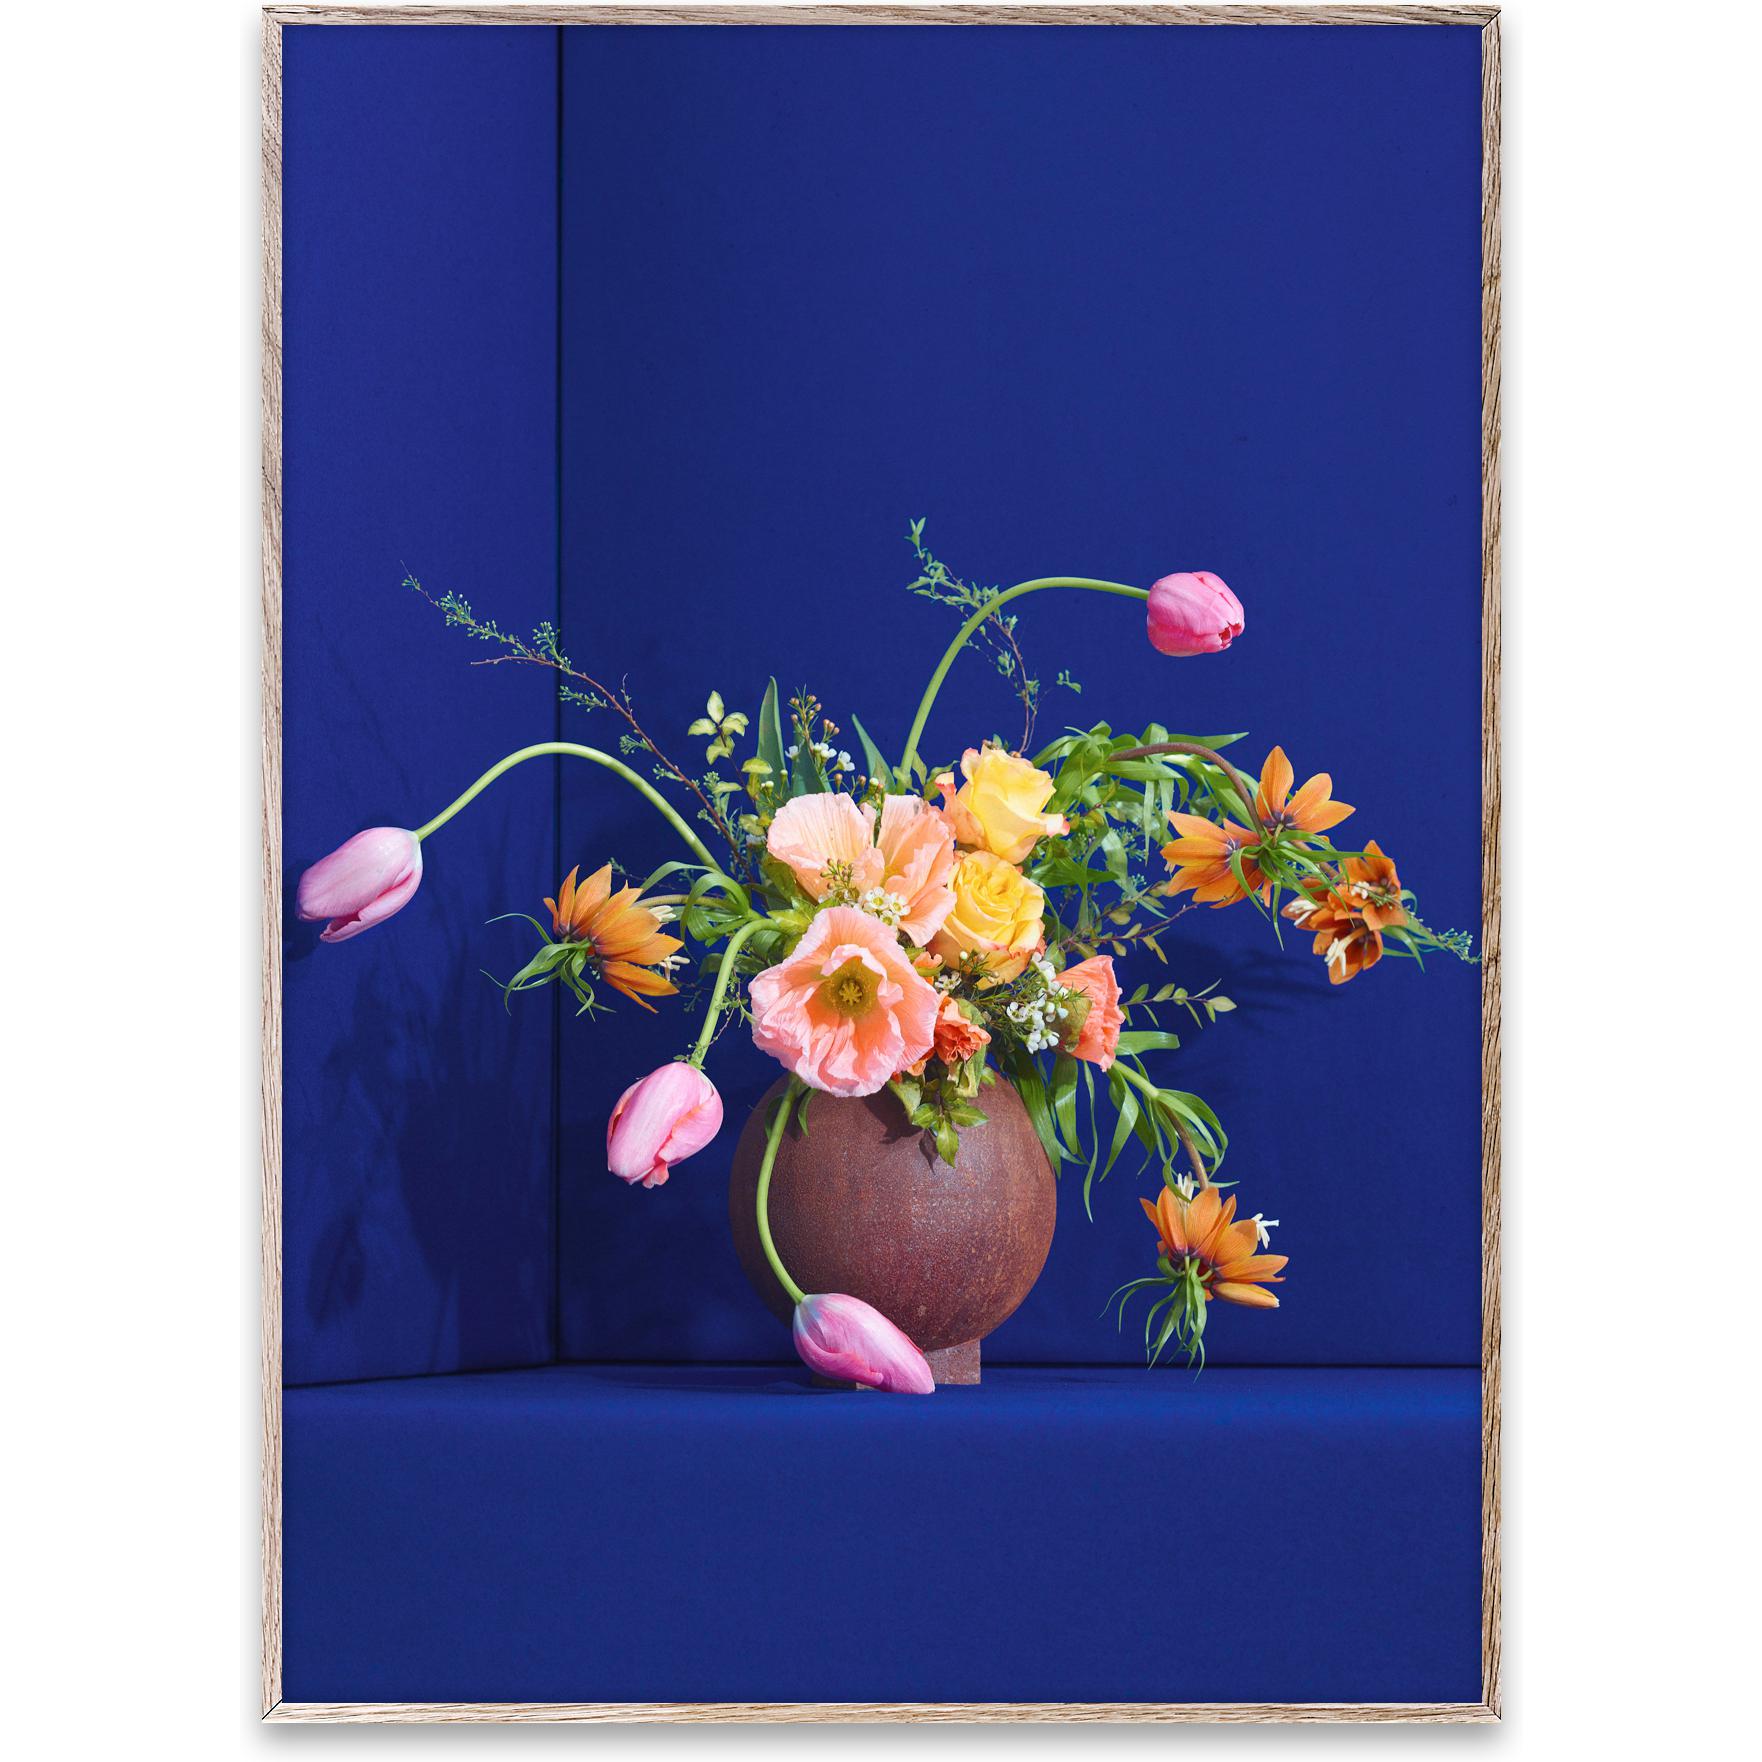 Papierkollektiv Blomst 01 Poster 50x70 cm, blau